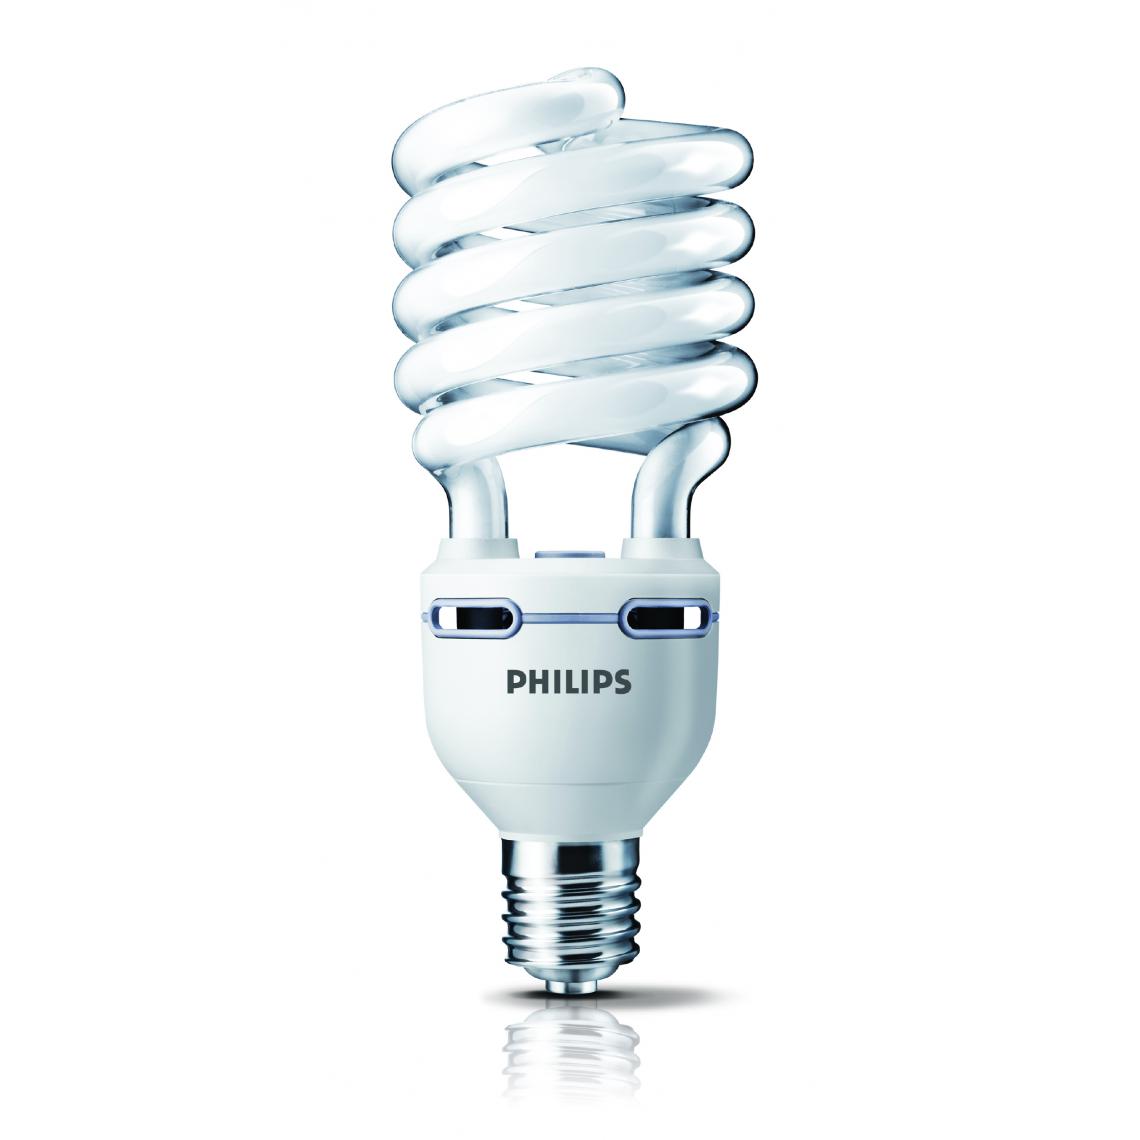 Philips - ampoule fluocompacte - philips tornado high lumen - e40 - 80w - 2700k - philips 808322 - Ampoules LED